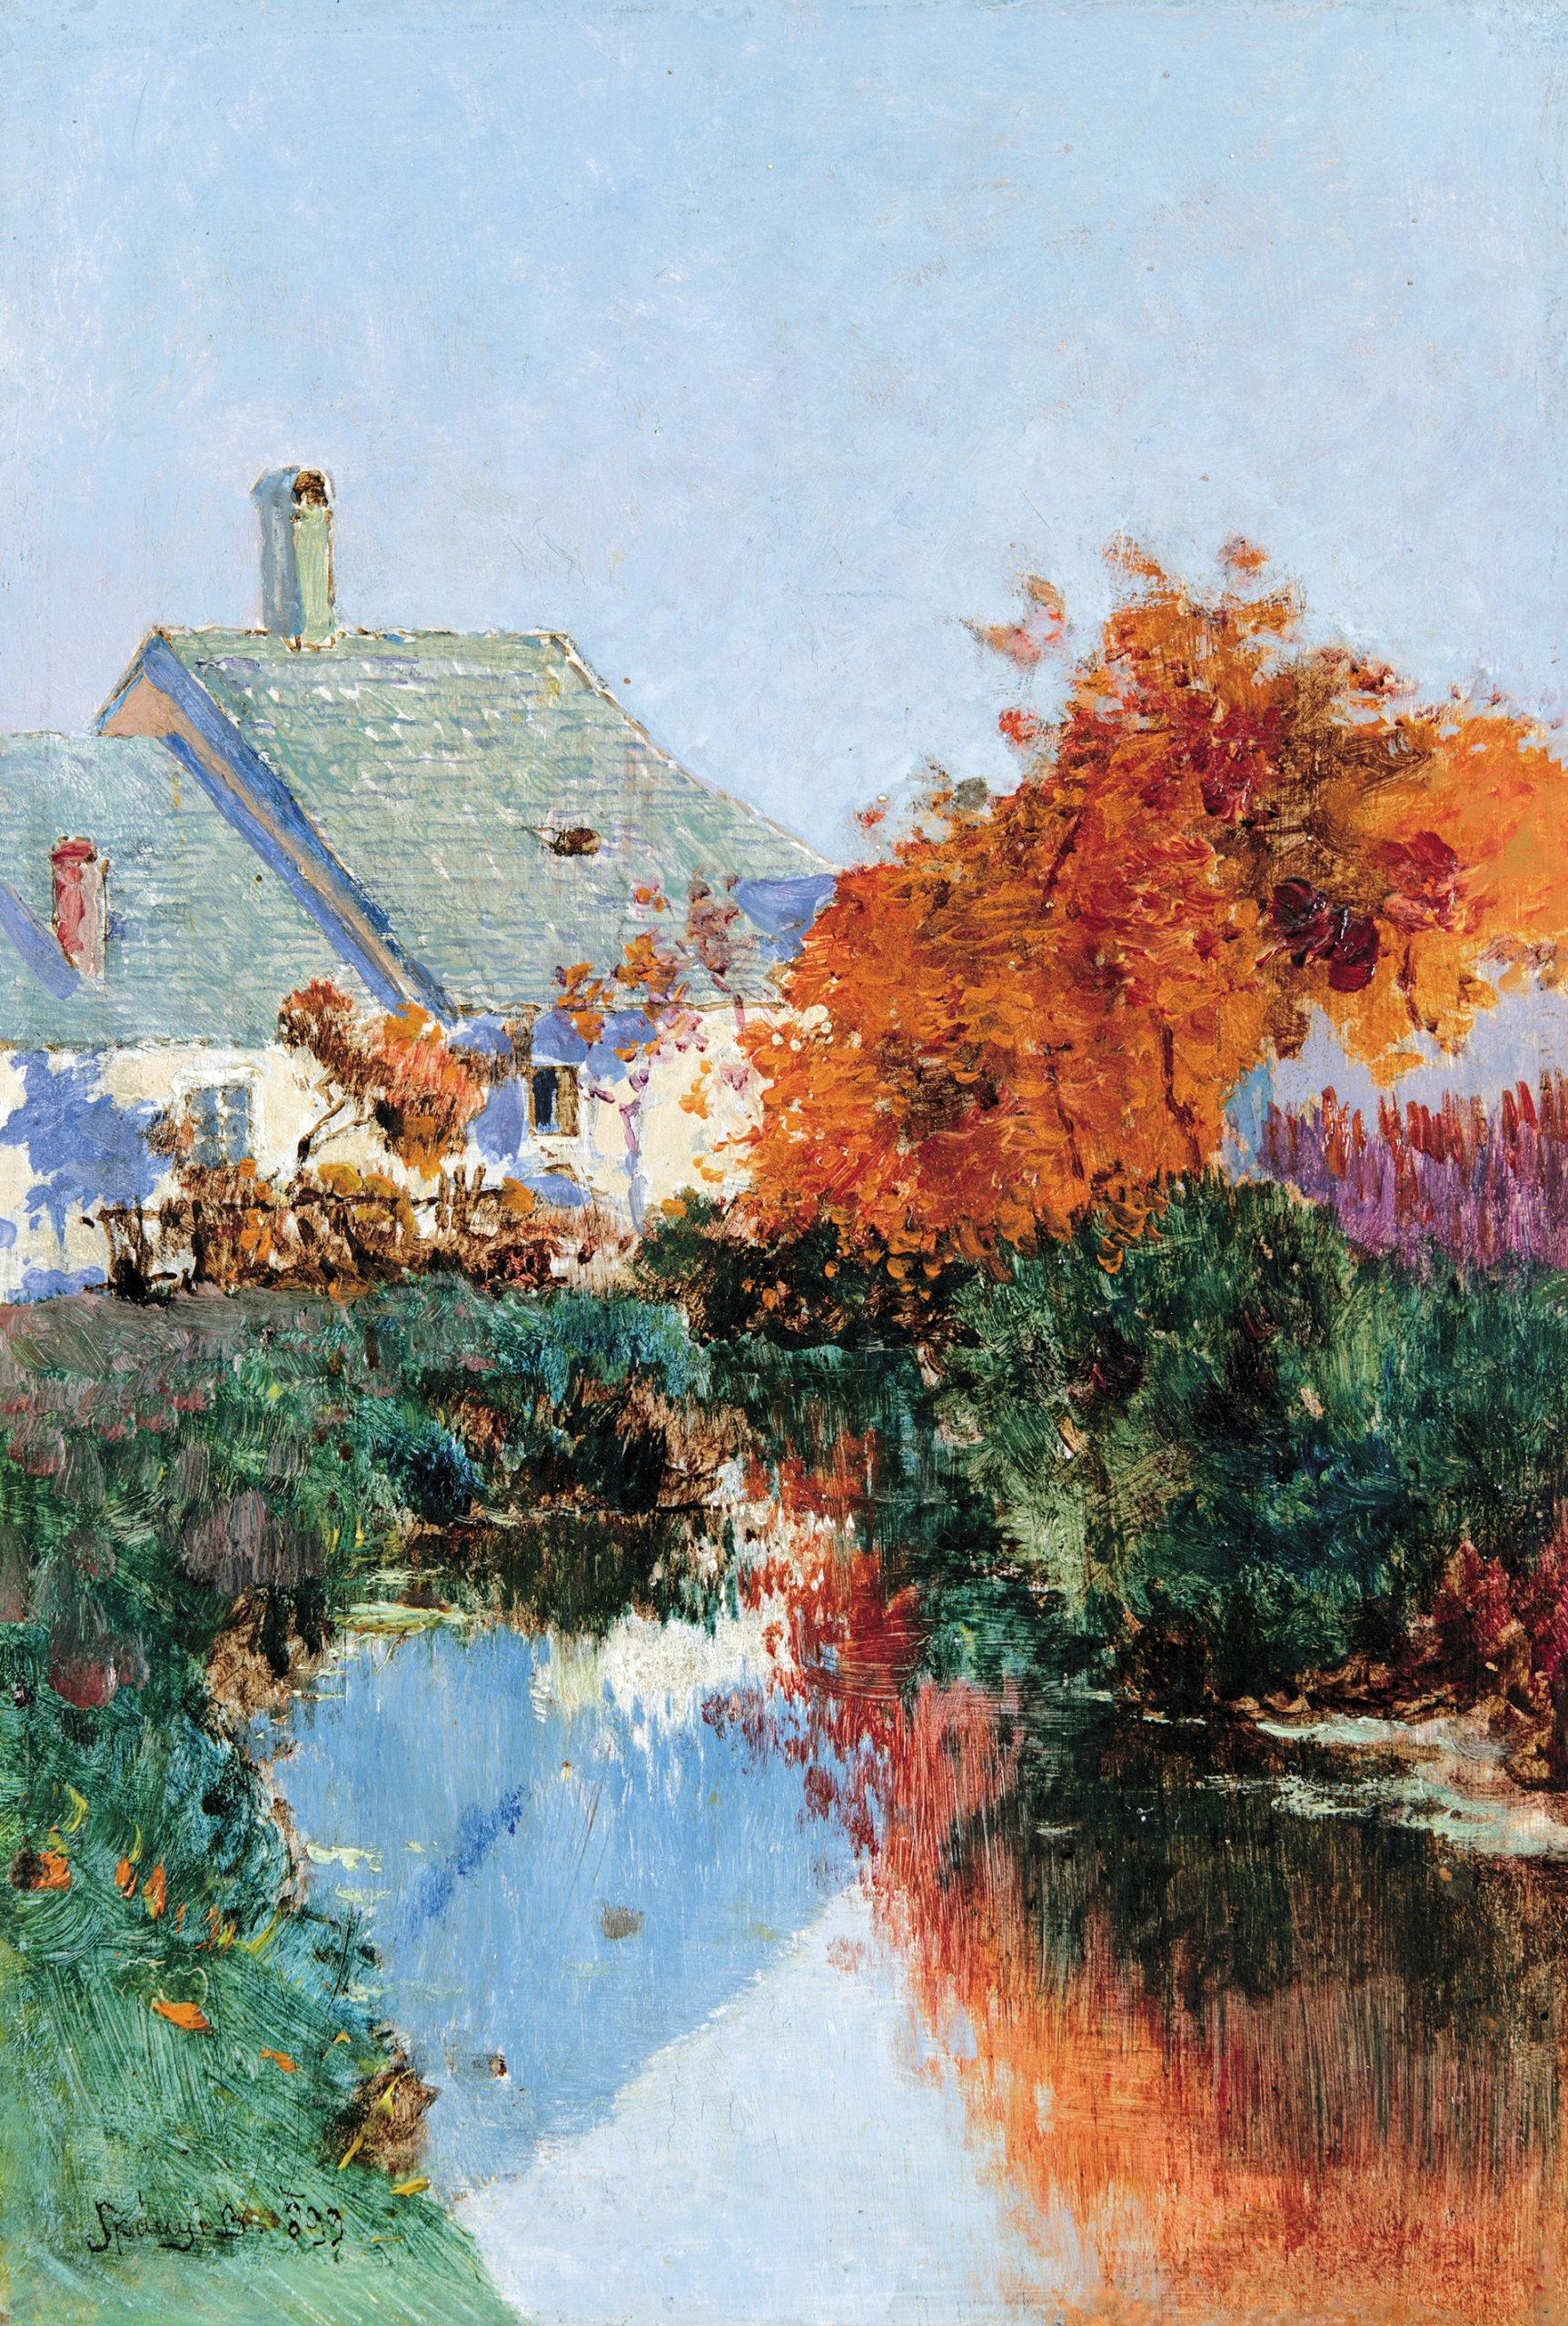 K. Spányi Béla (1852-1914) Autumn Landscape with House, 1899